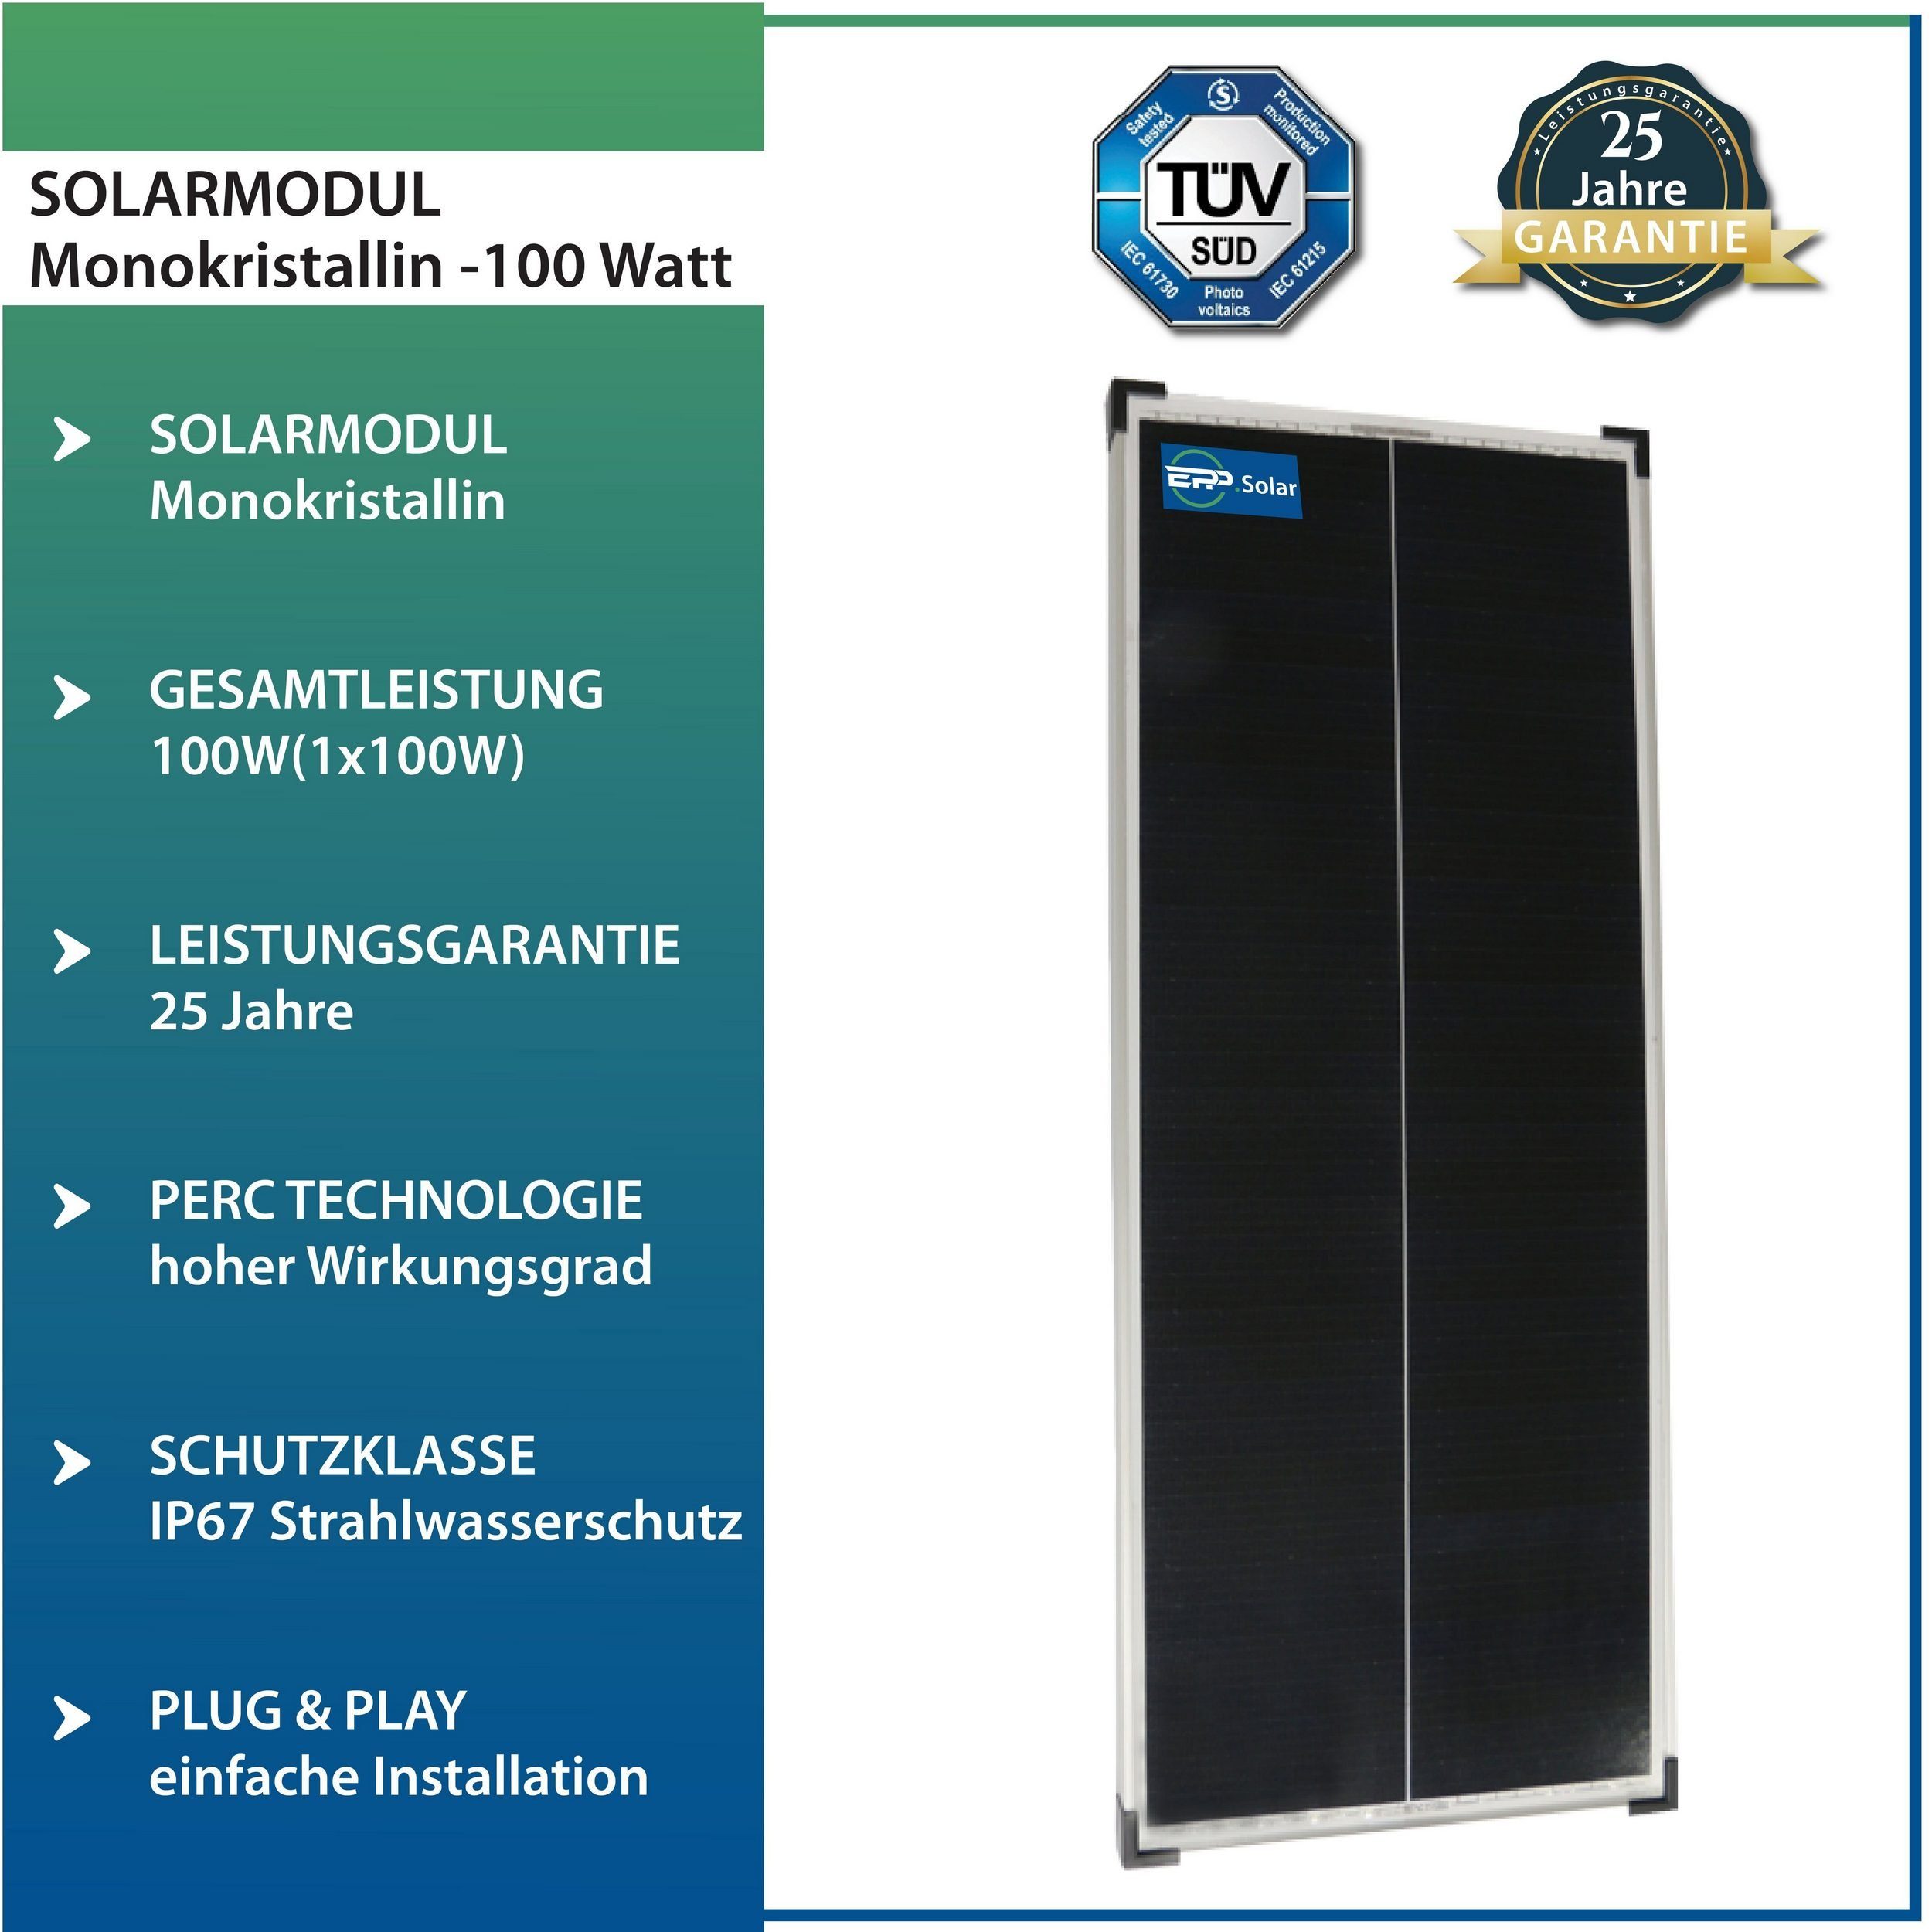 Wohnwagen Silber-46 für Wohnmobil 100W EPP.Solar X Mono Solarmodul 2 & Camper, Solaranlage